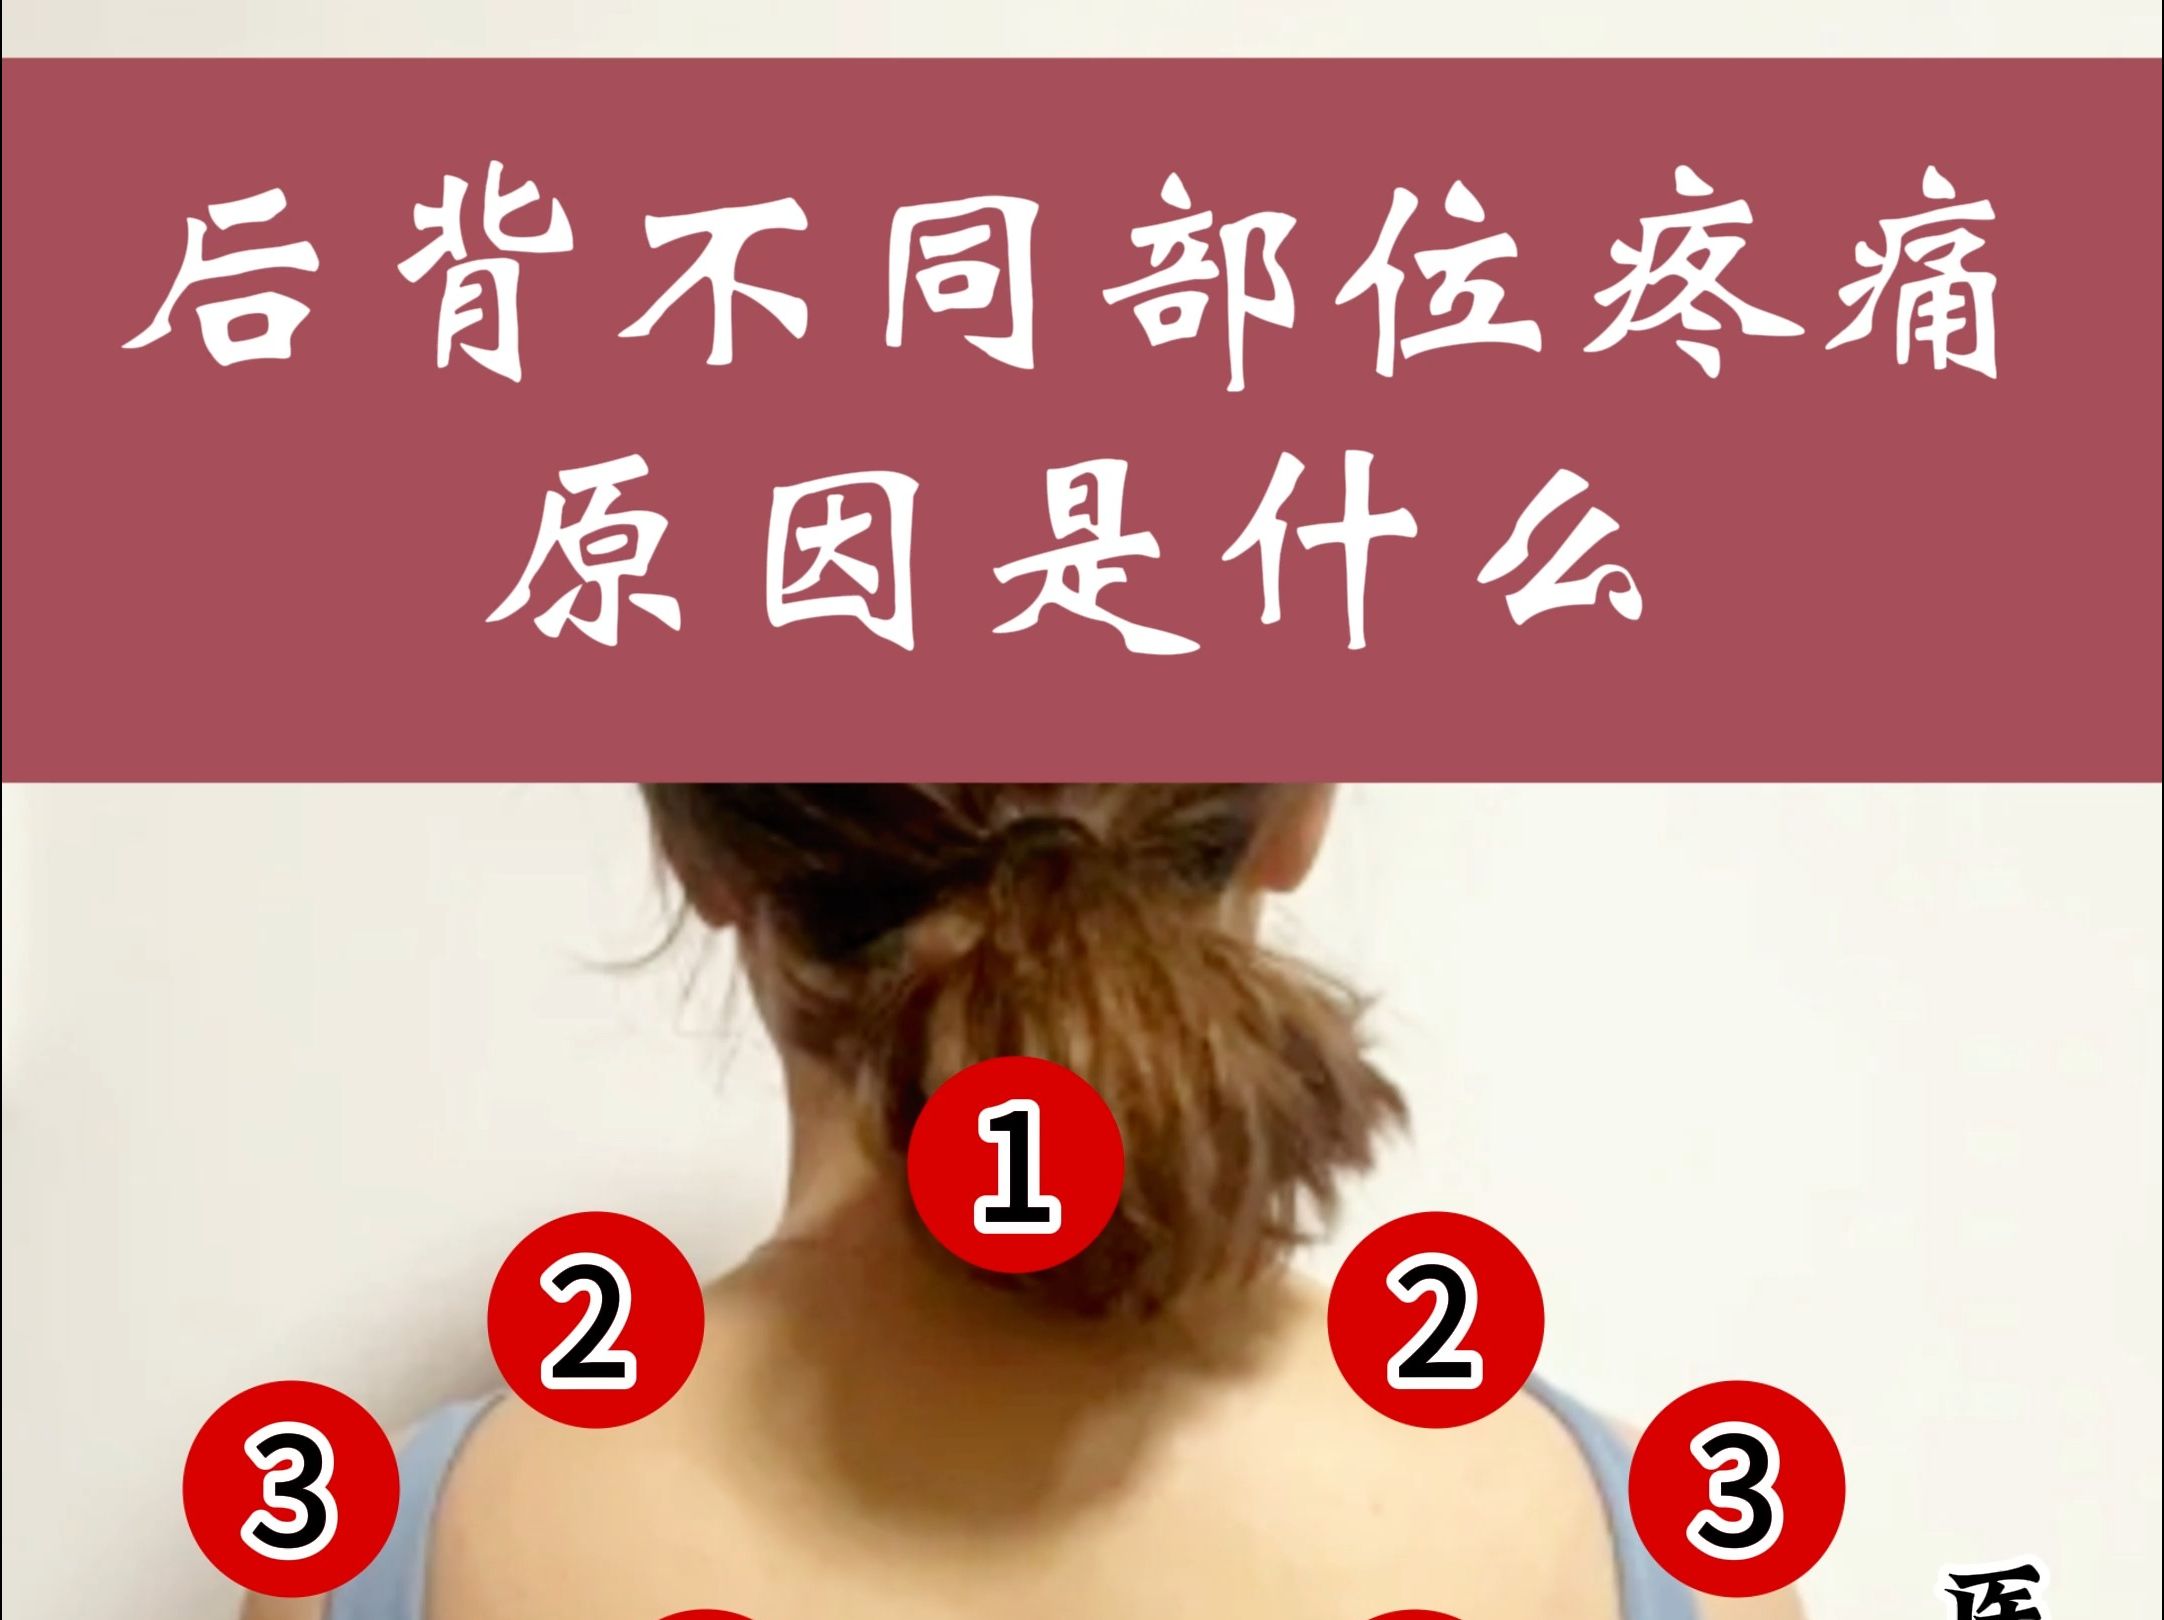 女性后背图片疼痛部位图片